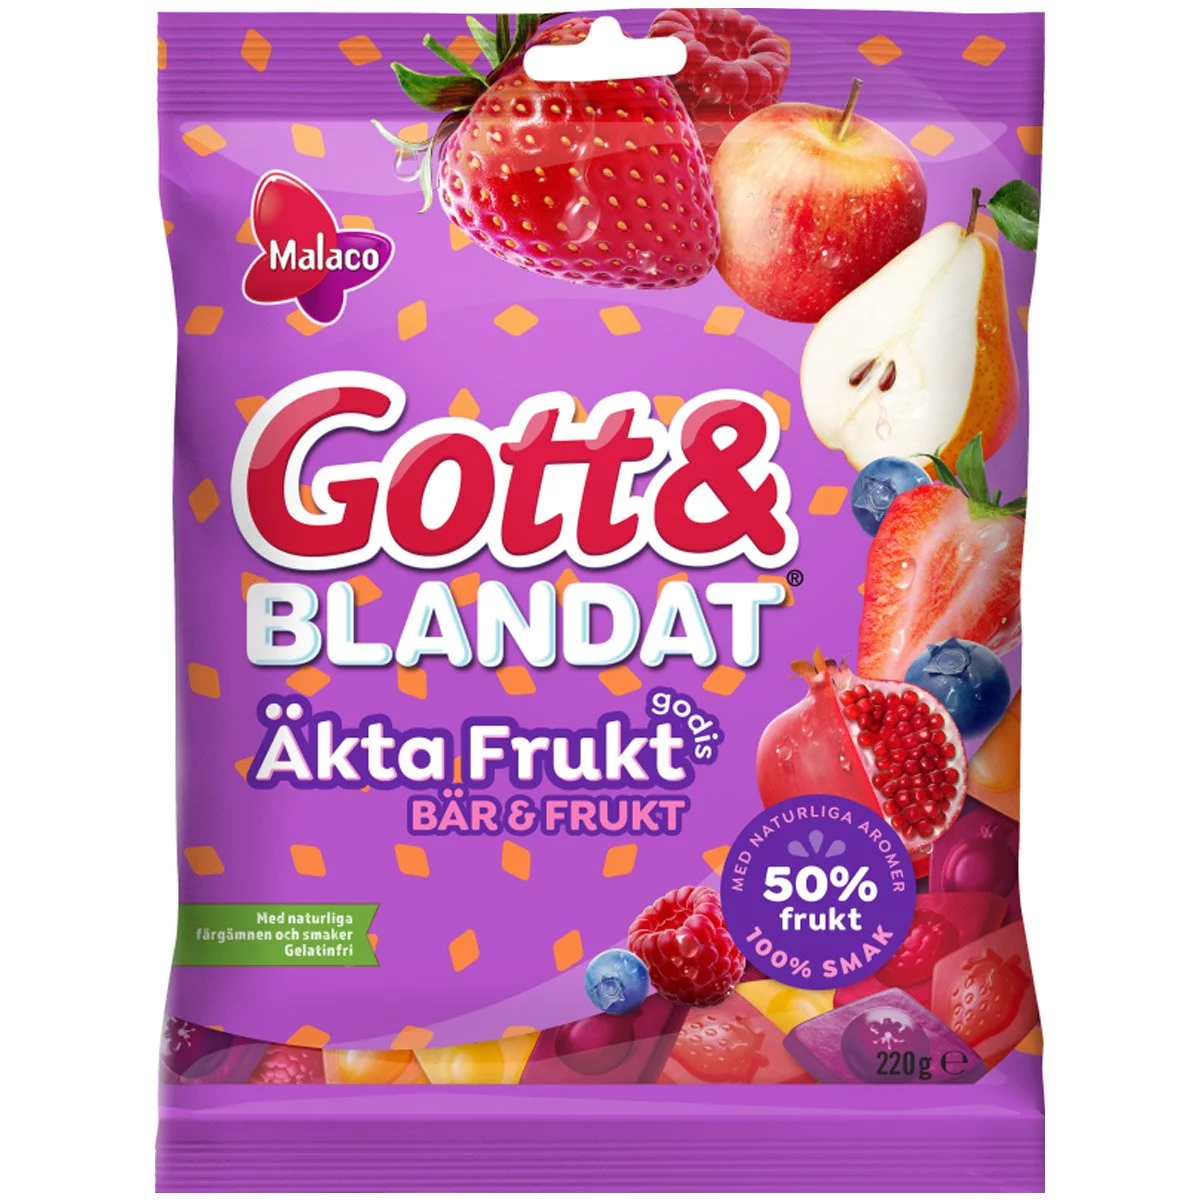 Malaco Gott & Blandat Äkta frukt - Beeren & Früchte (100g) 1